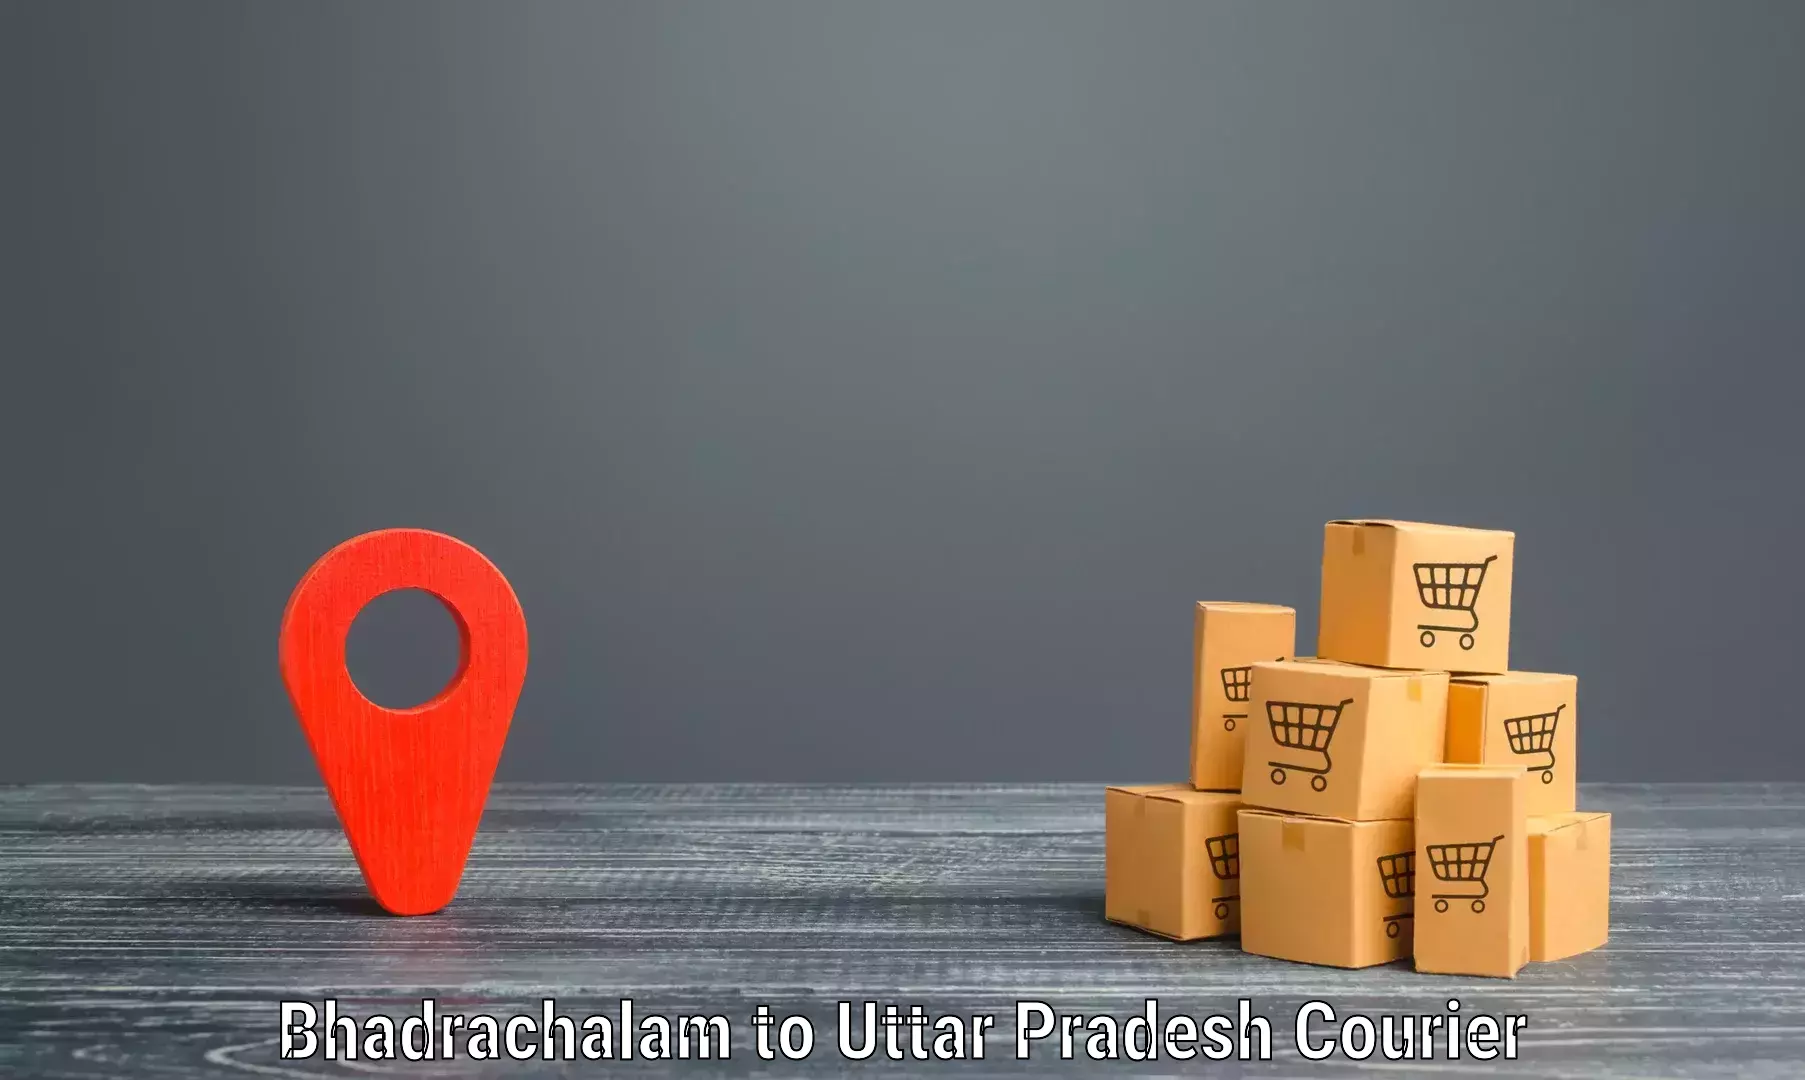 Fast shipping solutions Bhadrachalam to Kannauj